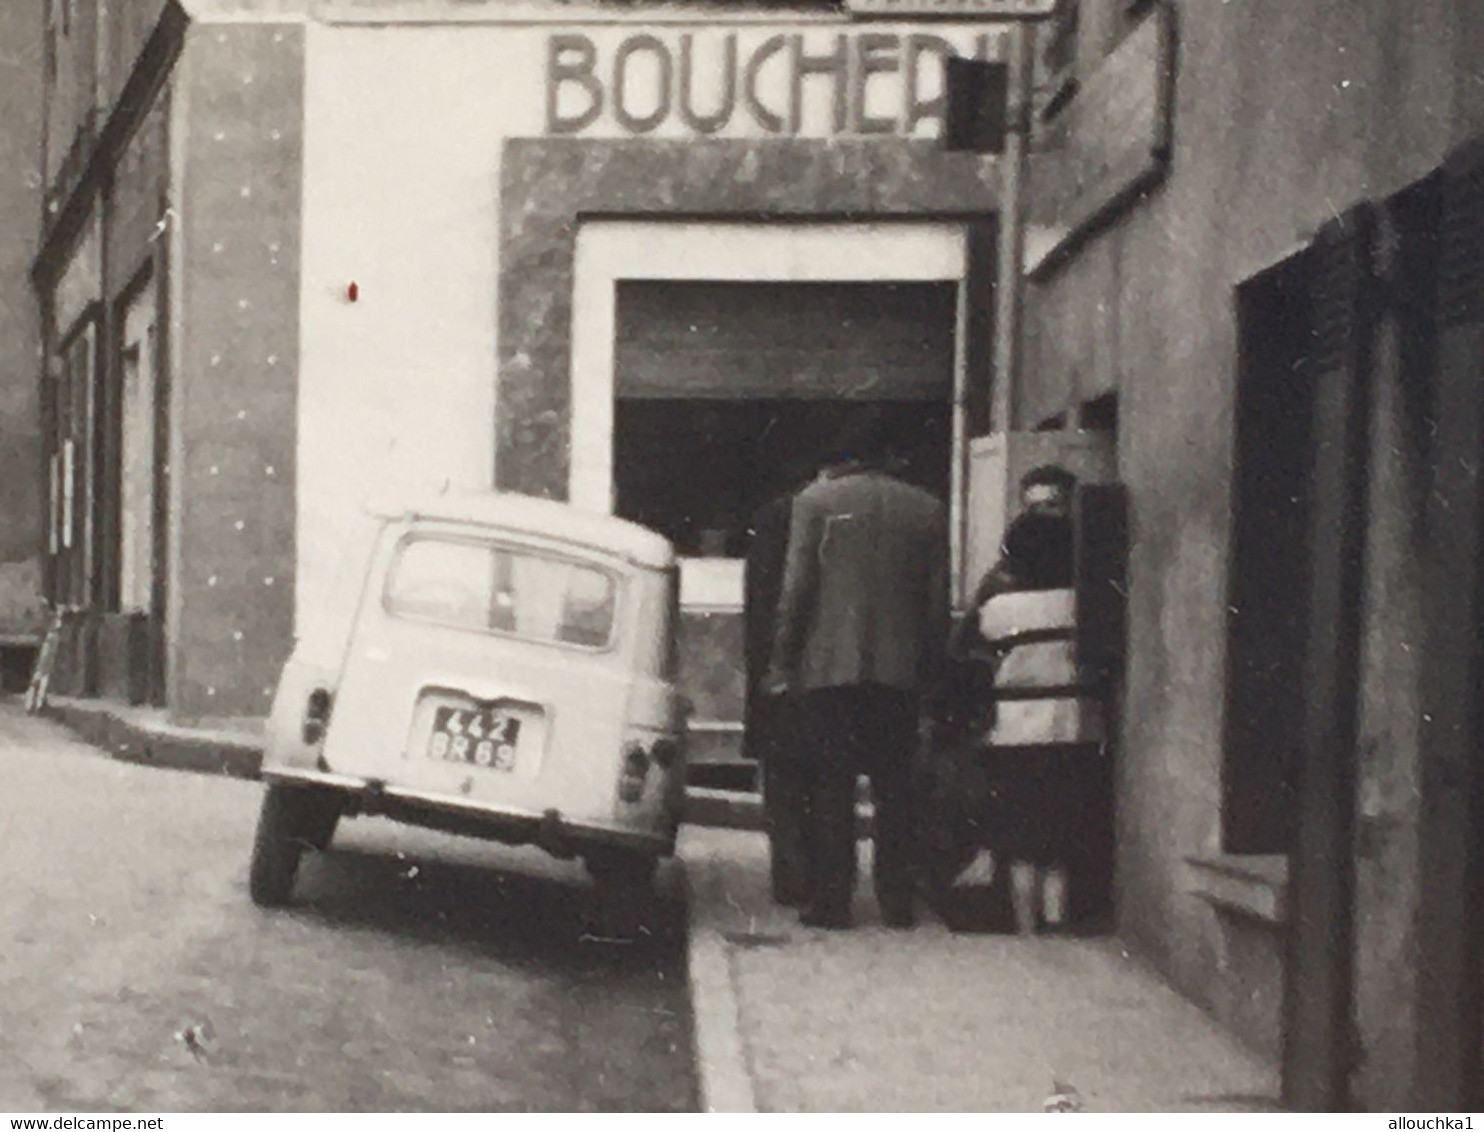 Voiture Automobile Renault 4L De Dos-☛Photographie Photo Originale-☛rue Vers Village D' Aups Var 1950≃-magasin Boucherie - Cars